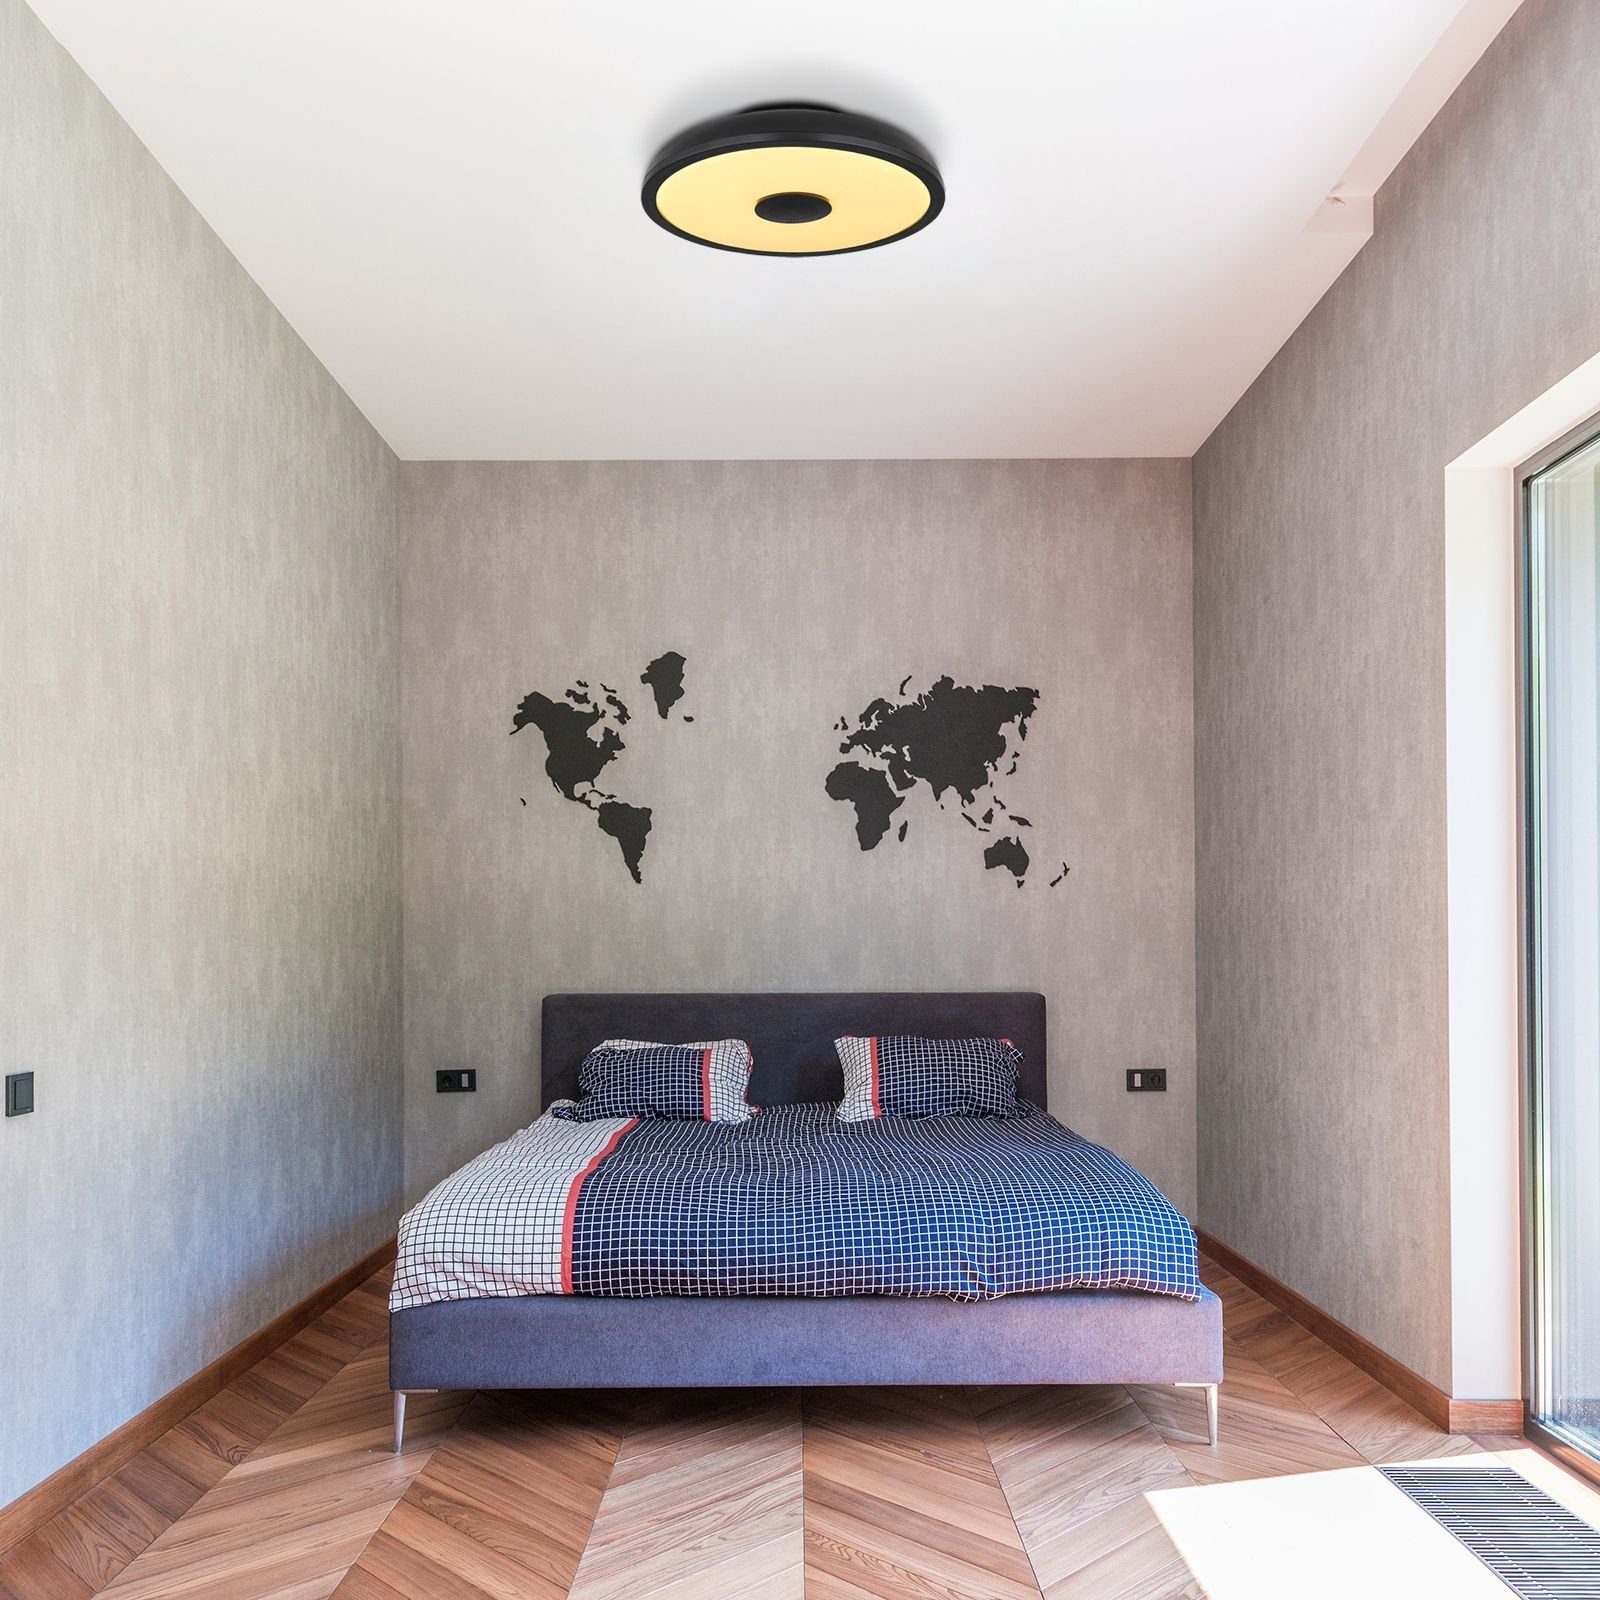 Wohnzimmer LED Deckenlampe Deckenleuchte GLOBO Fernbedienung Globo Dimmbar Deckenleuchte